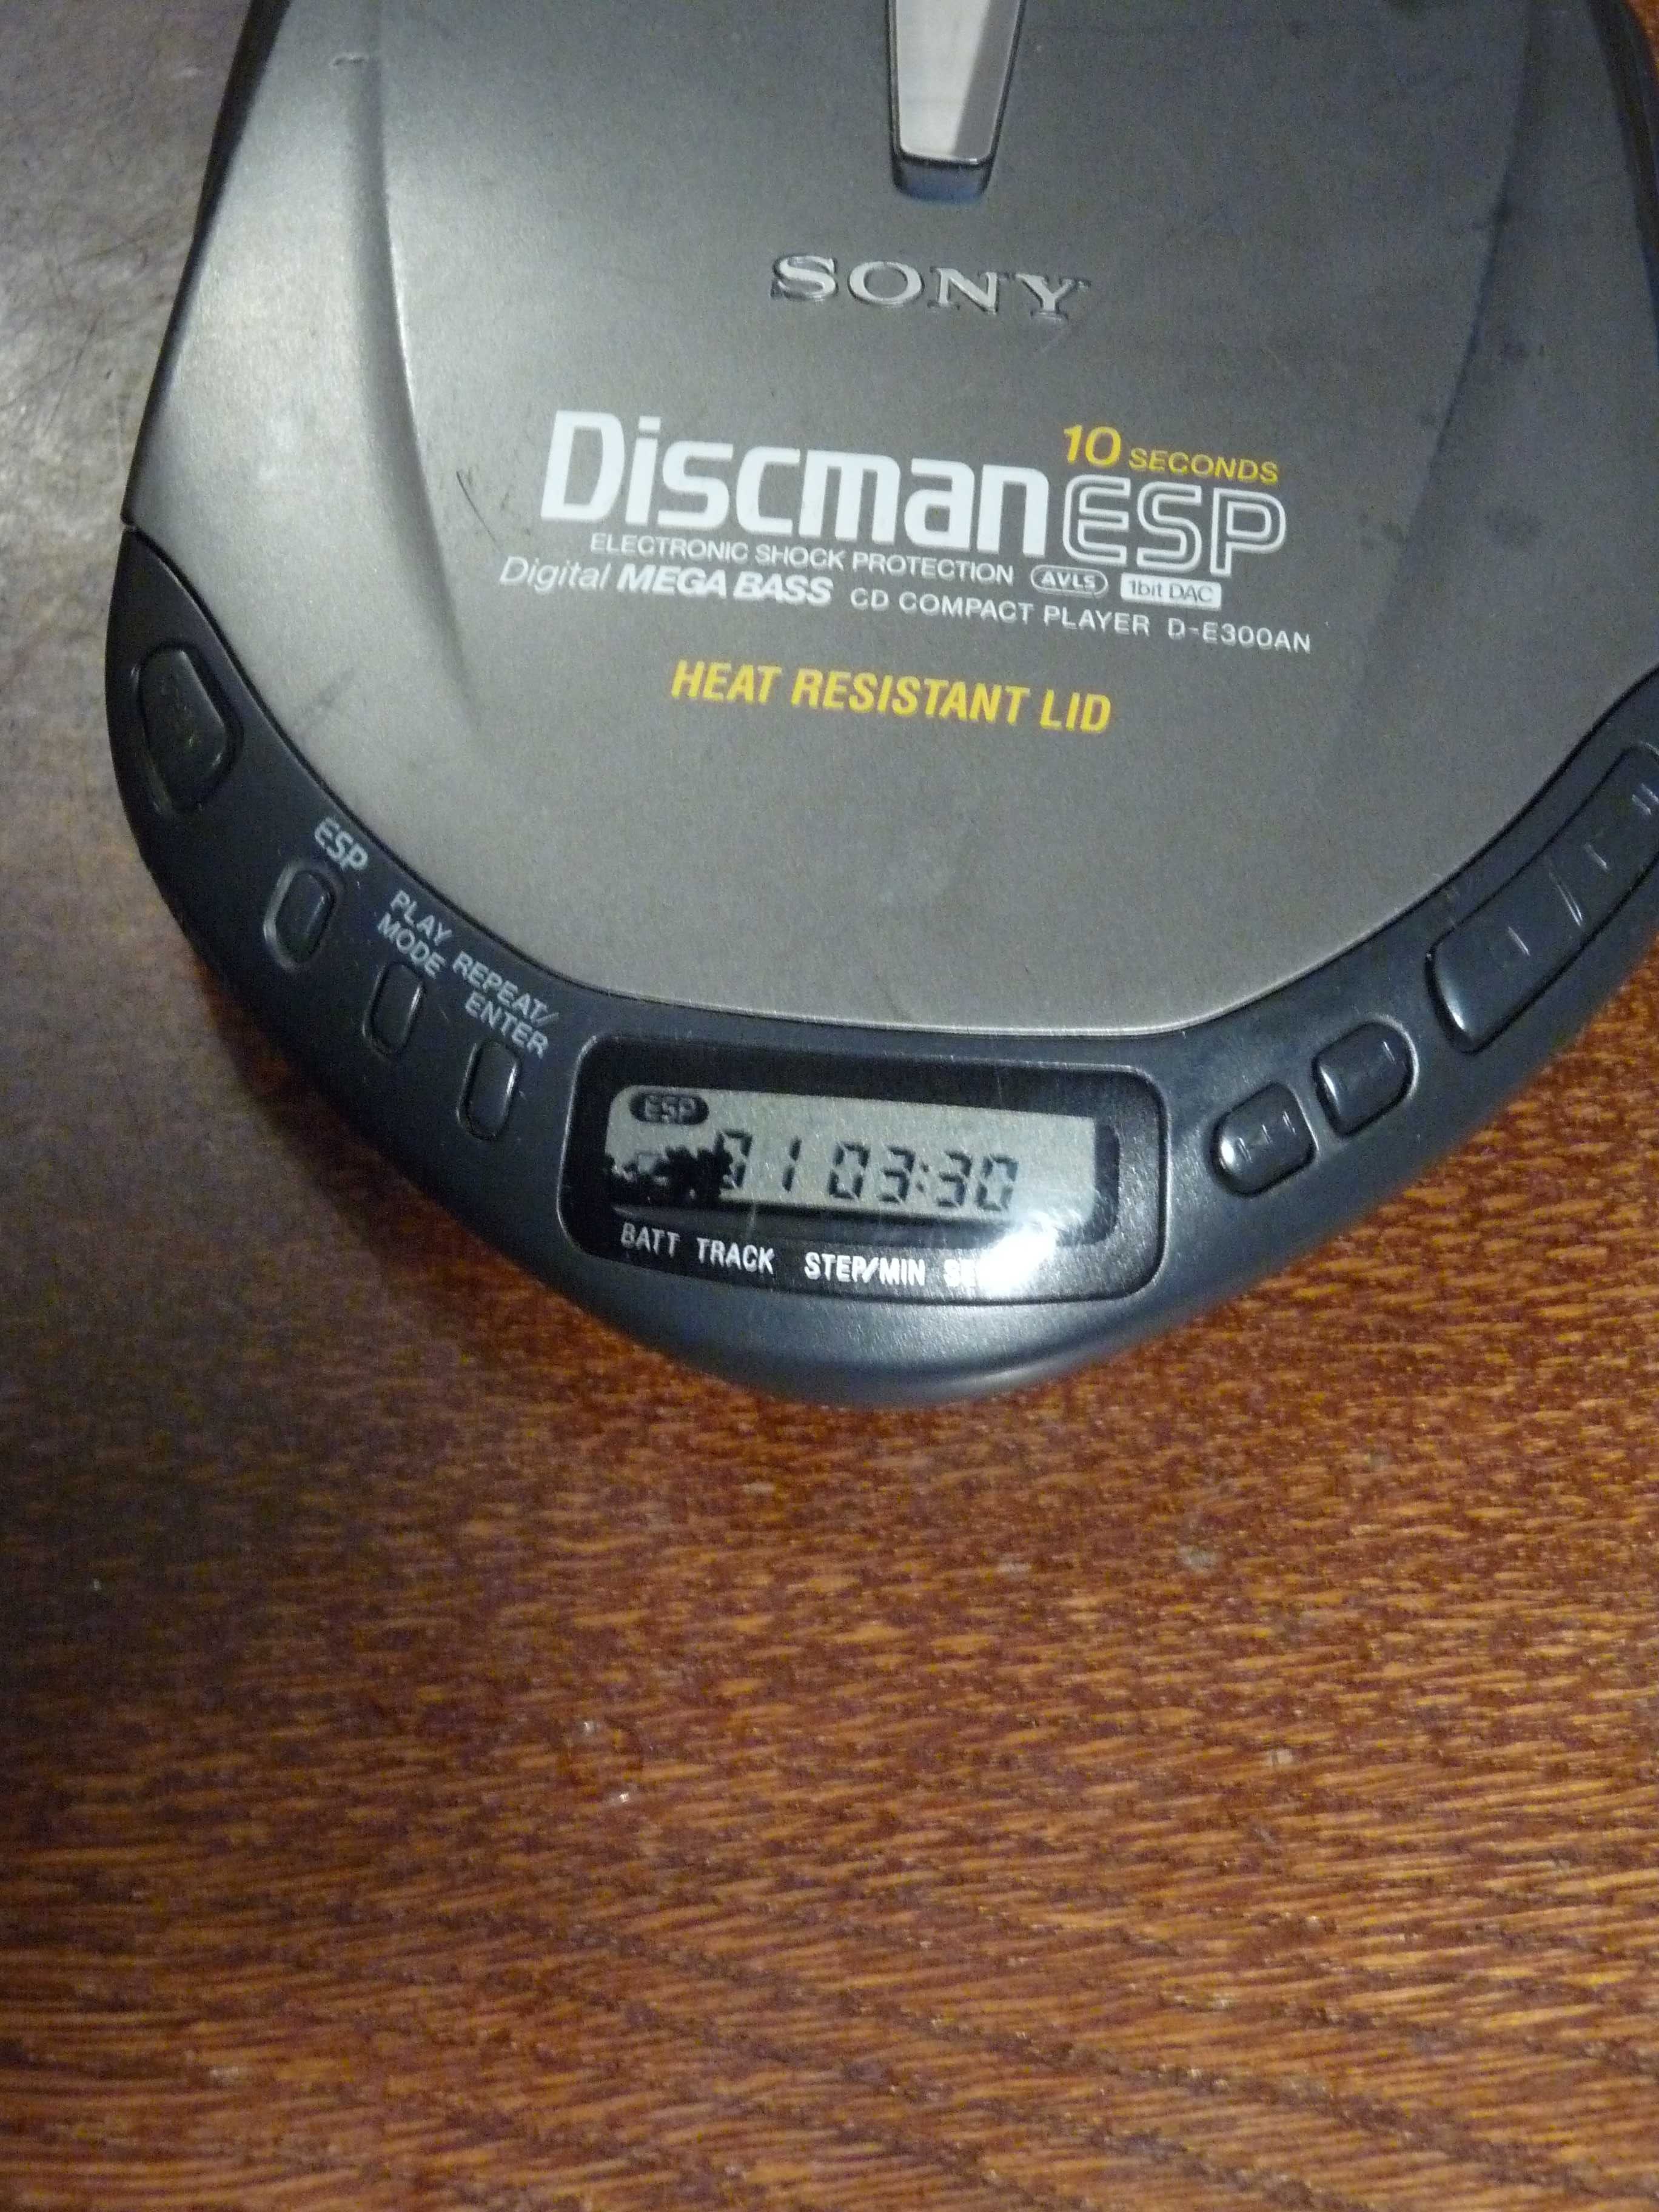 Sony Discman D-E300AN